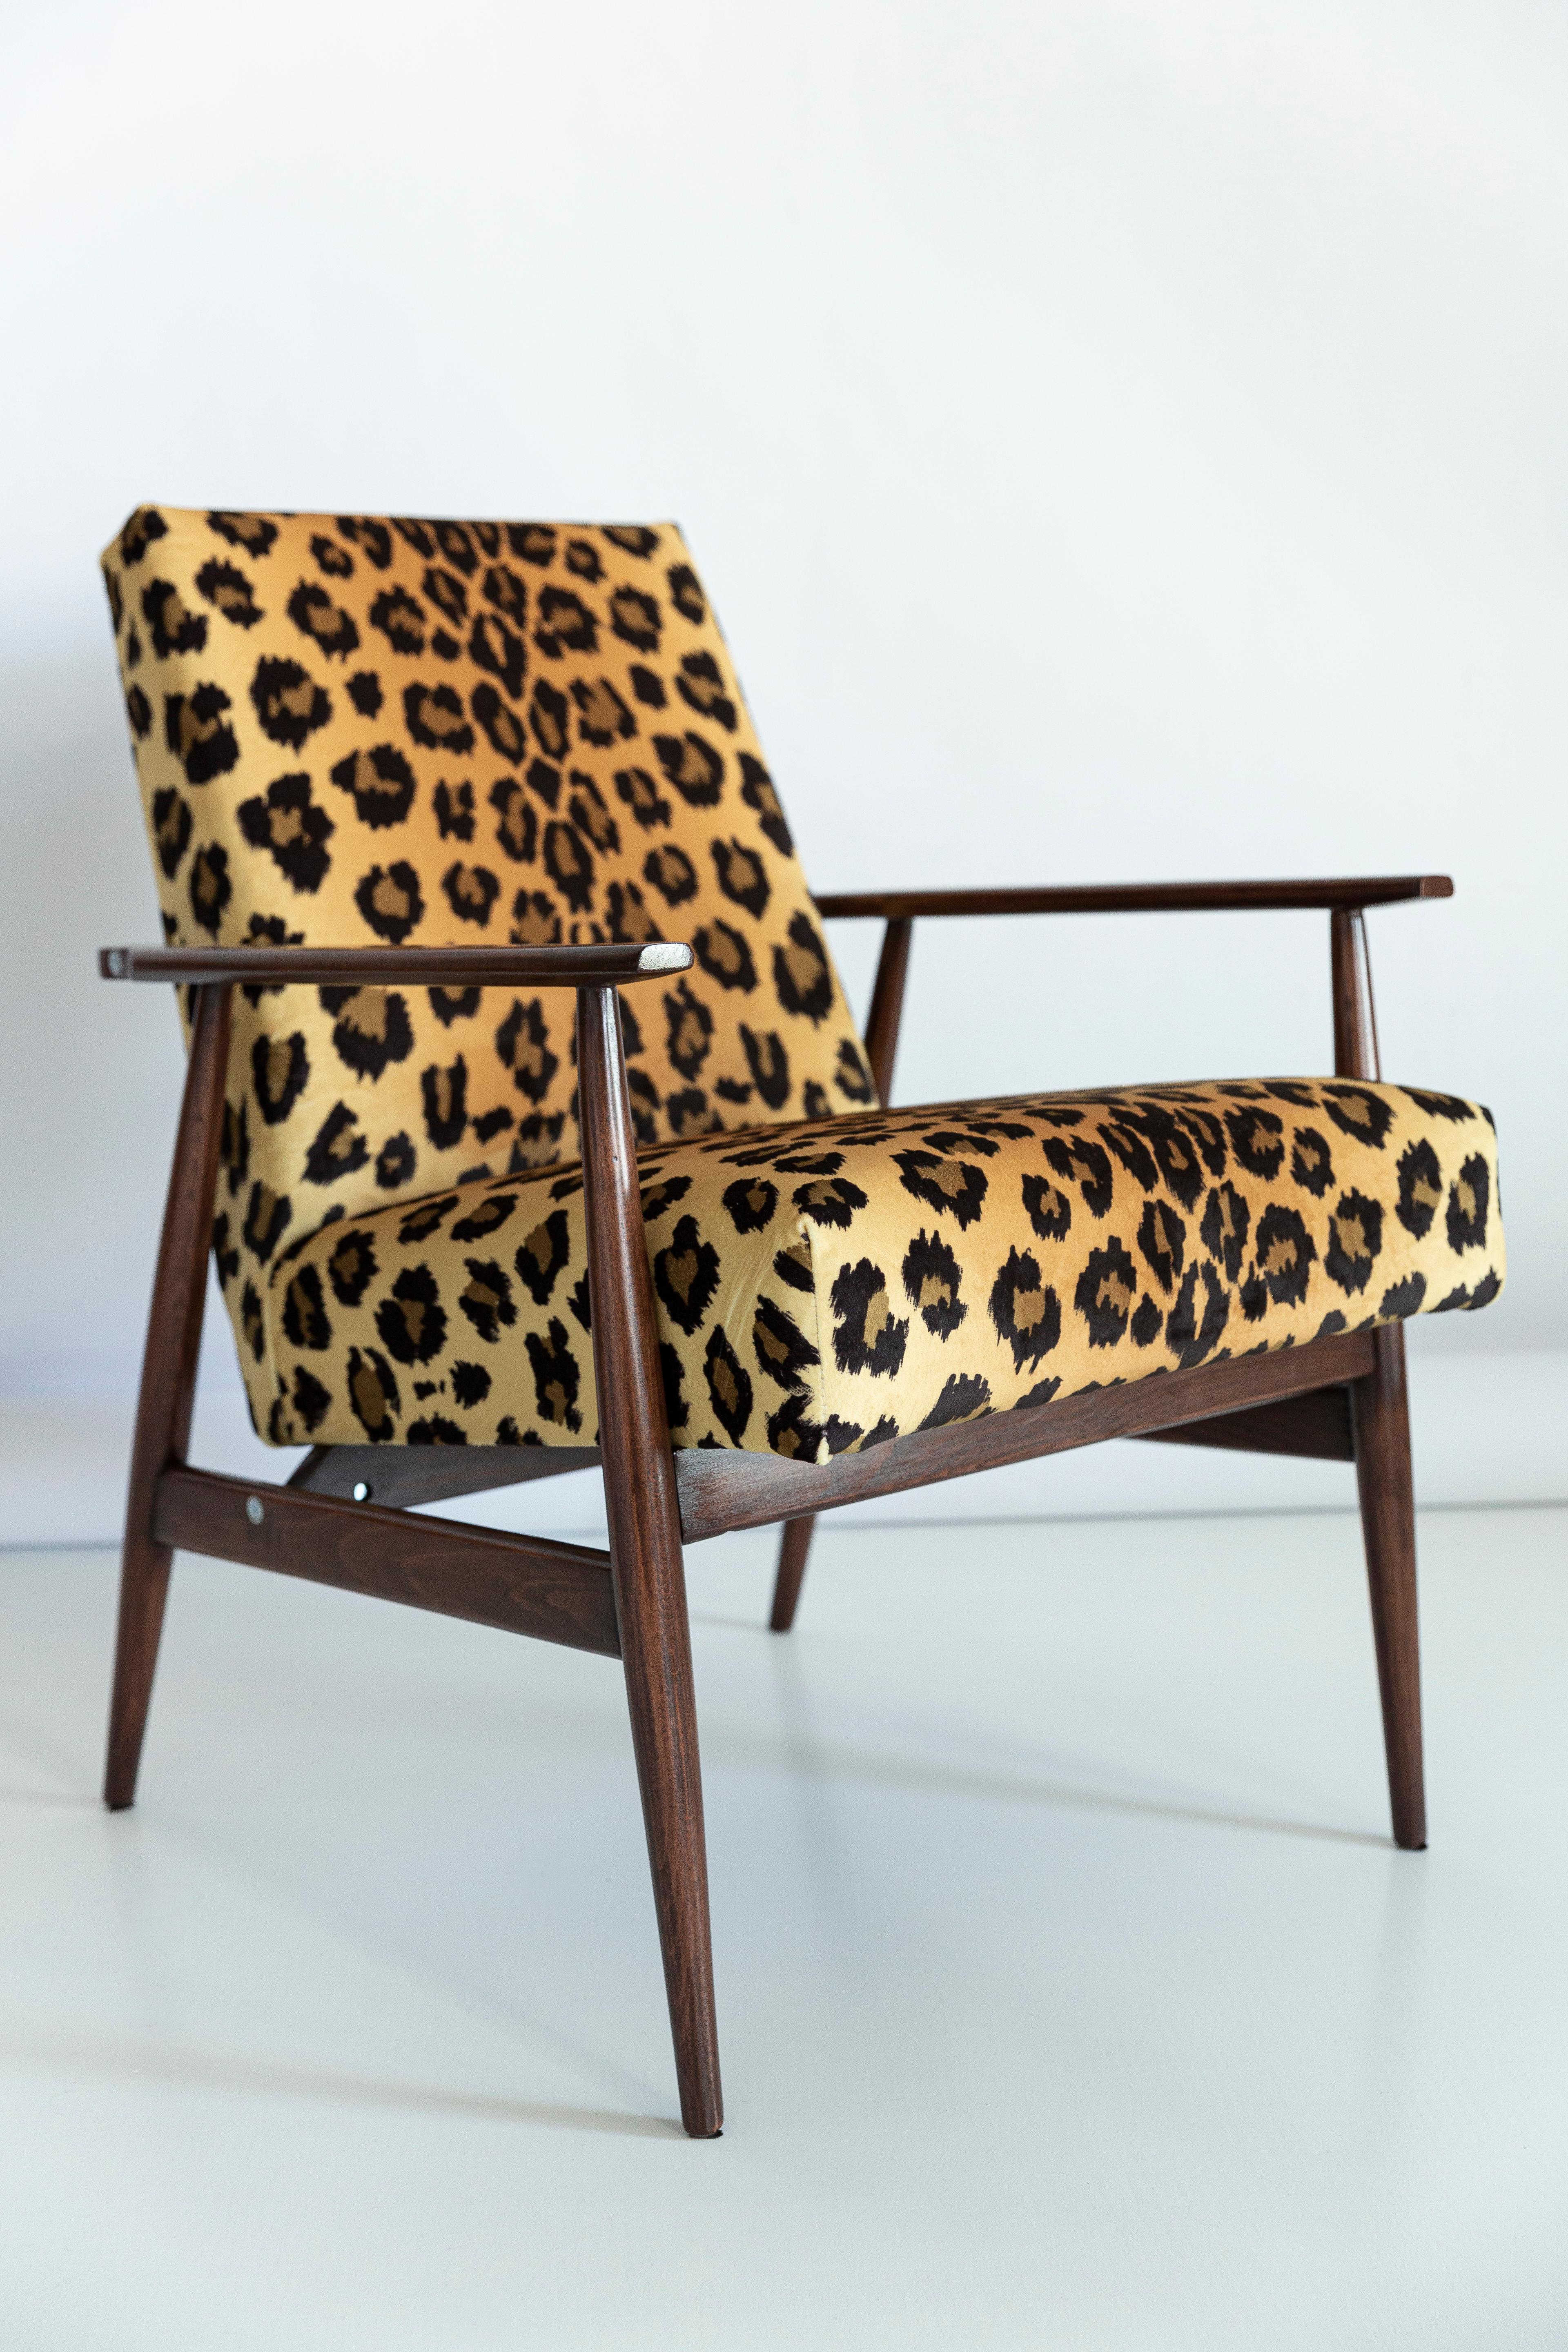 cheetah print chair outdoor